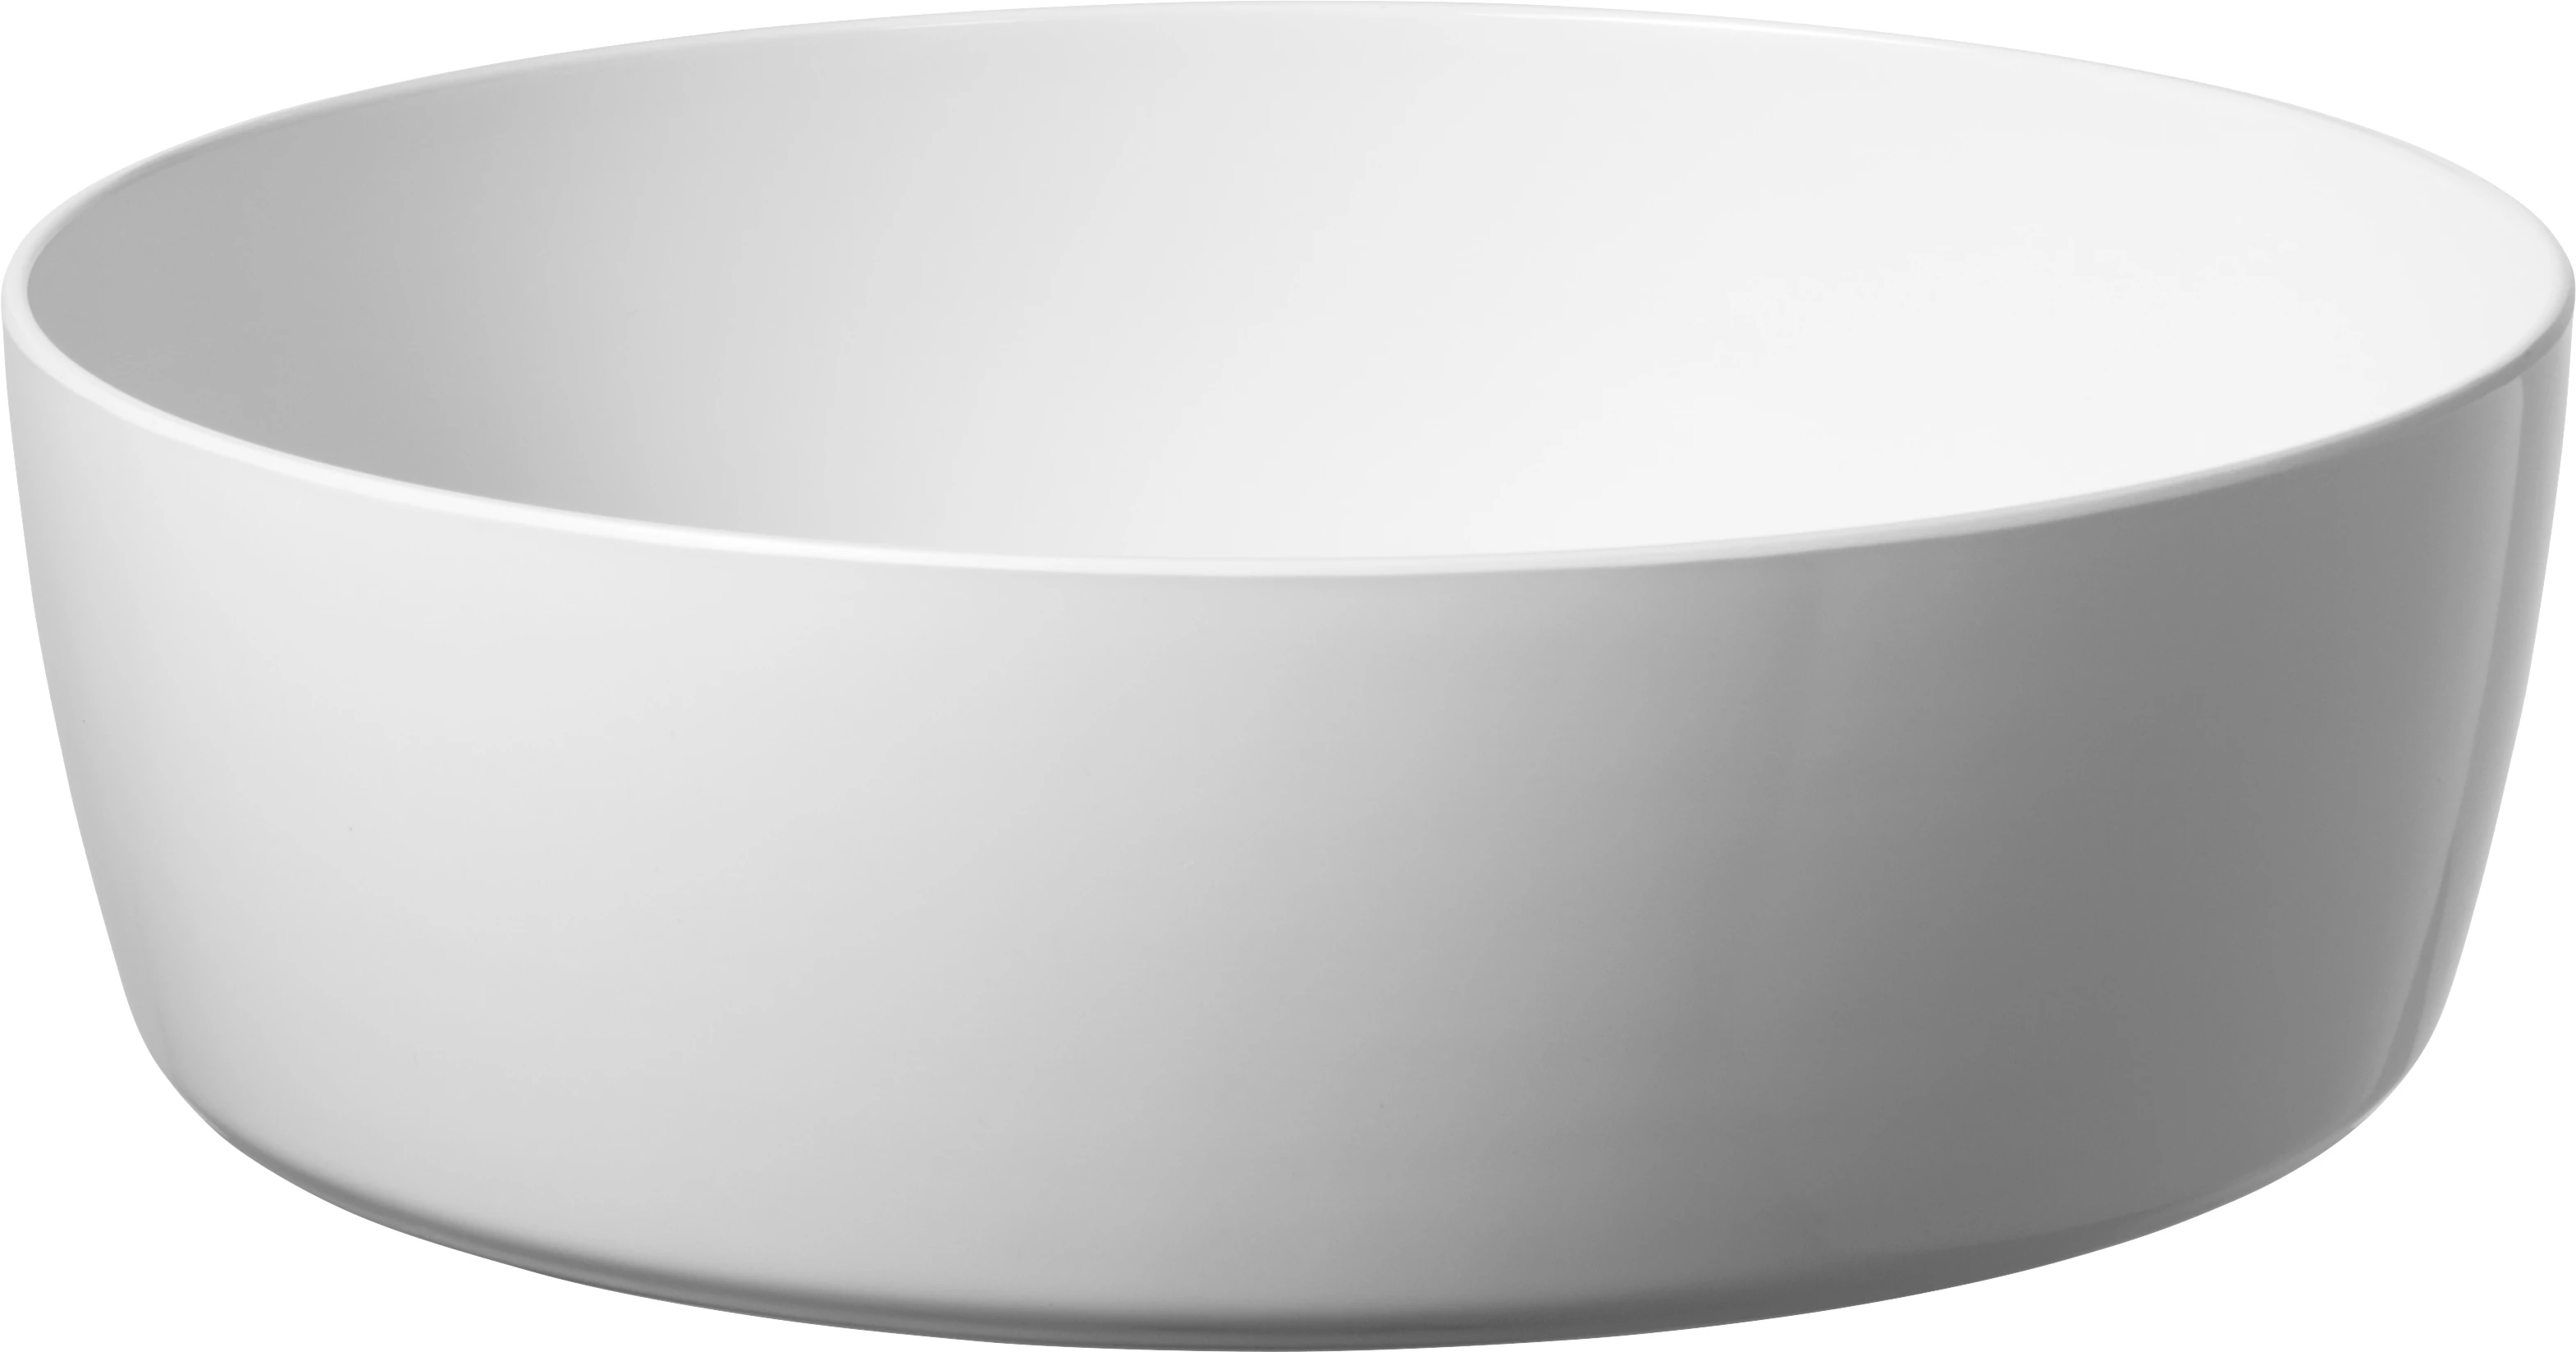 Rislo buffetskål, hvid, ø35 x H11 cm